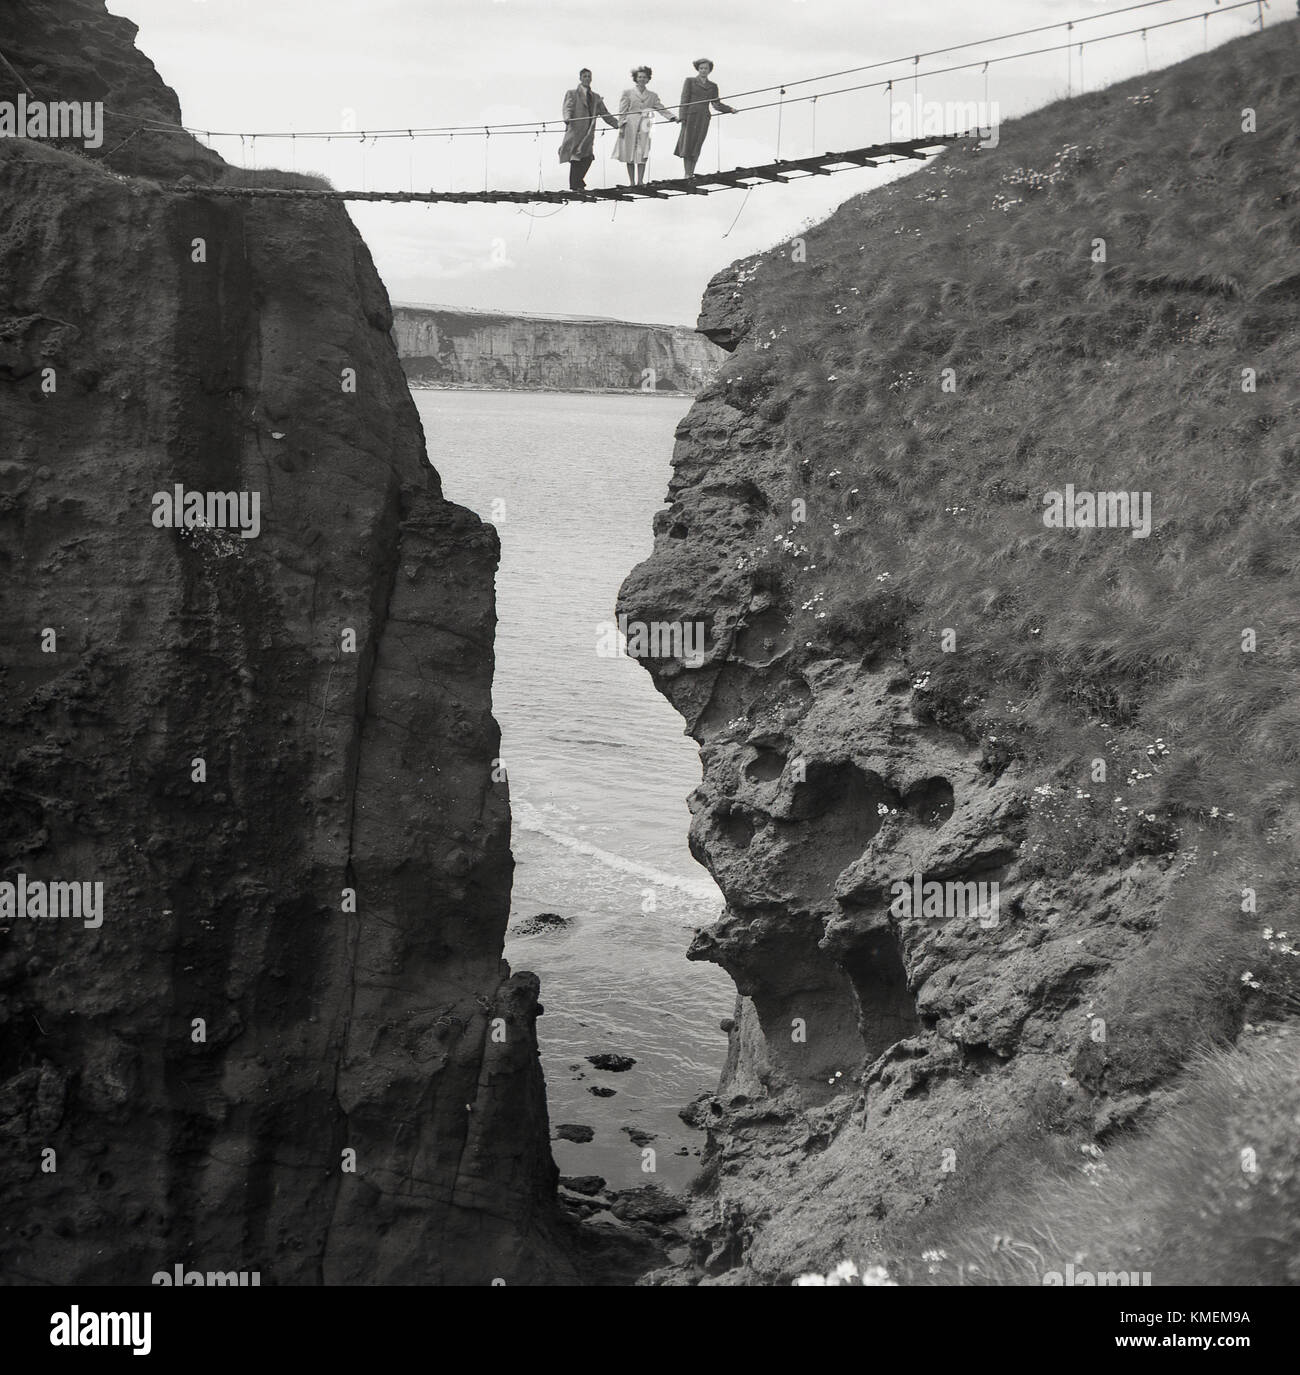 Années 1950, historique, un homme et deux femmes posent pour une photo debout sur le fameux Carrick-a-rede, Co Antrim, en Irlande du Nord. Le pont de corde est de près de 100m de haut qui relie le continent à la petite île de Carrickarede et a été créé en 1755 par des pêcheurs de saumon. Banque D'Images